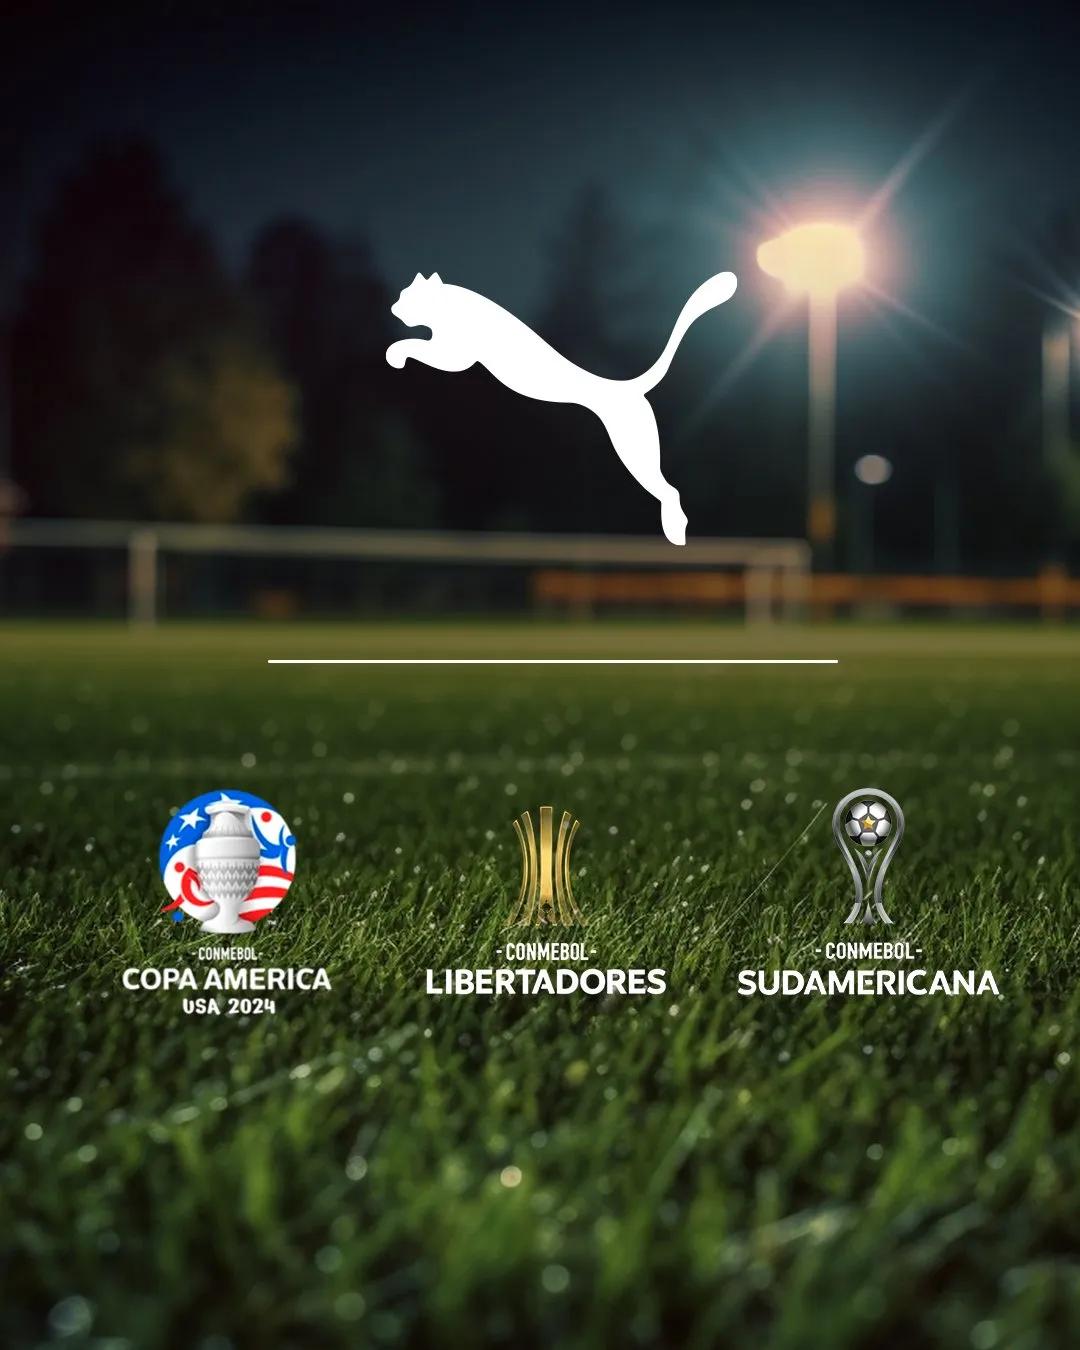 PUMA nuevo patrocinador oficial de CONMEBOL